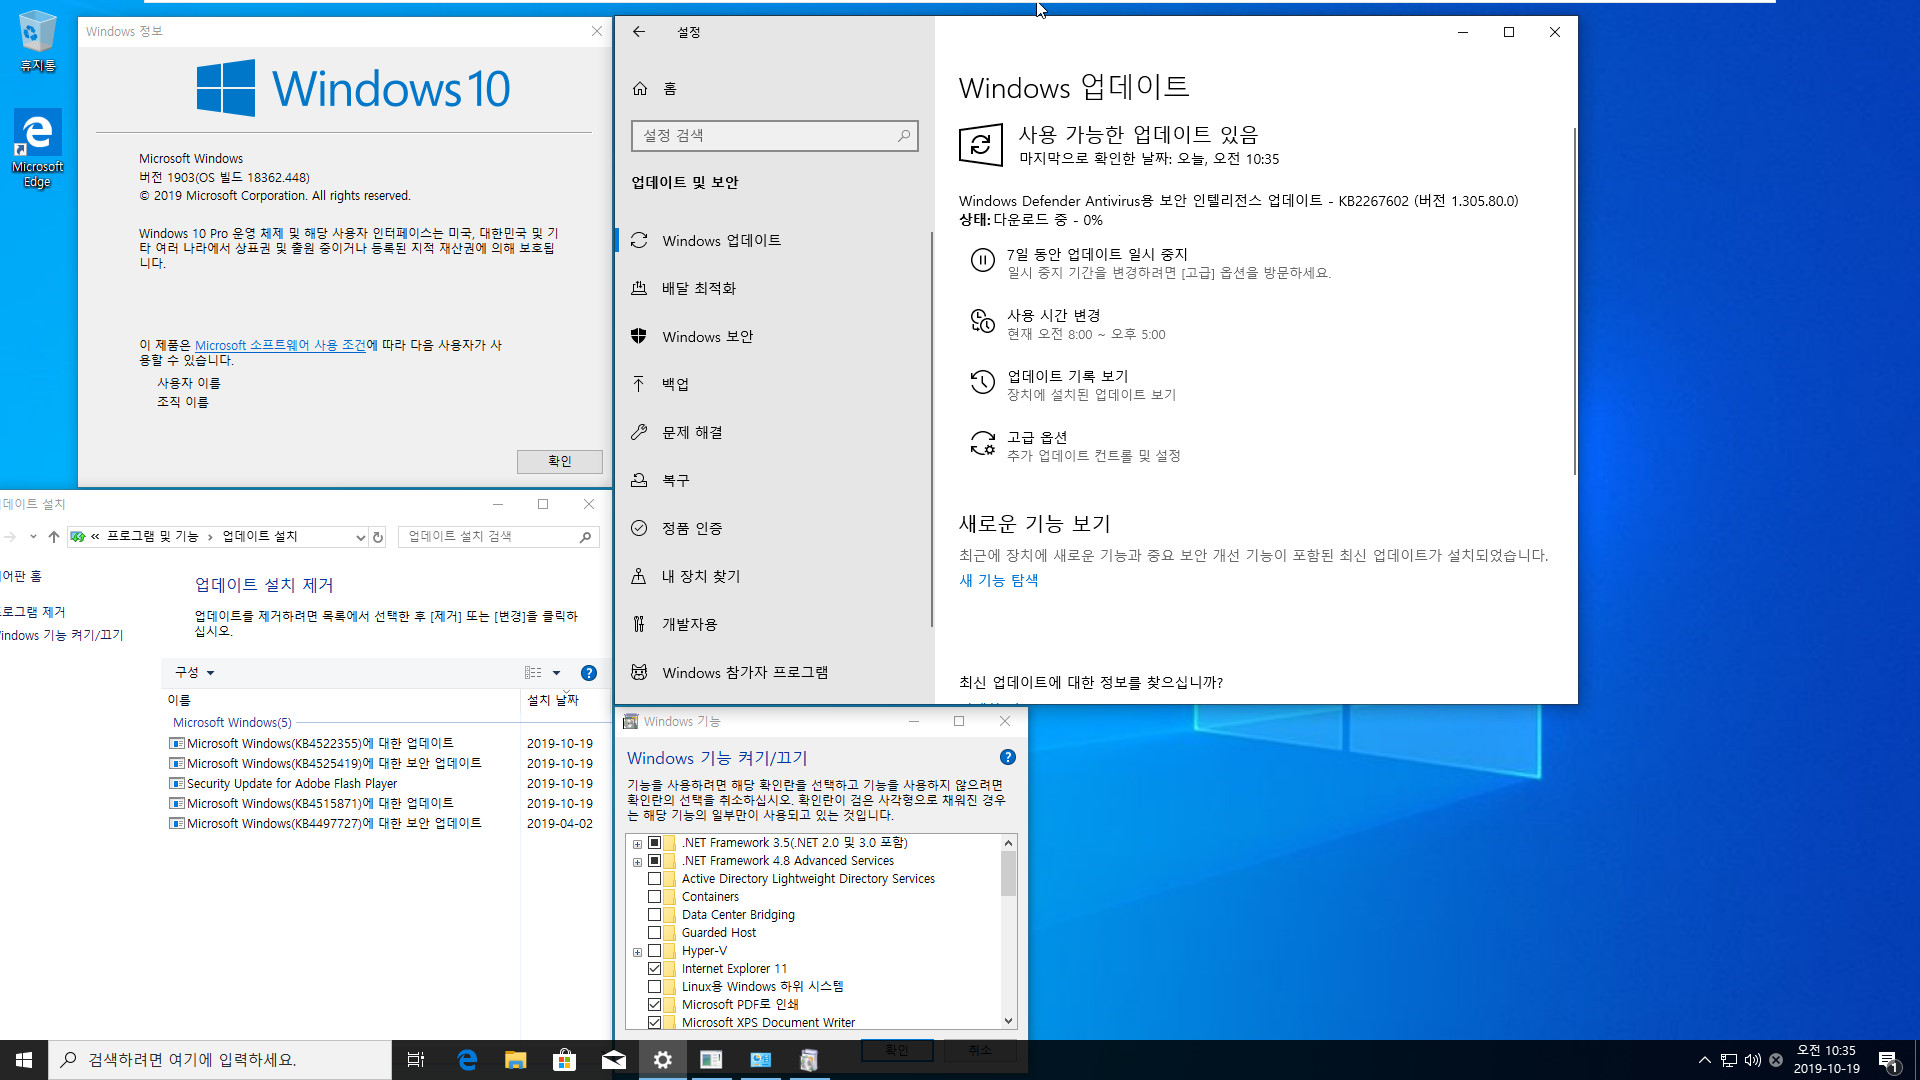 Windows 10 버전 1903 누적 업데이트 KB4522355 (OS 빌드 18362.448) [2019-10-18 일자] [릴리스 프리뷰] 나왔네요 - 프로 64비트 install.wim 통합중 입니다 2019-10-19_103527.jpg